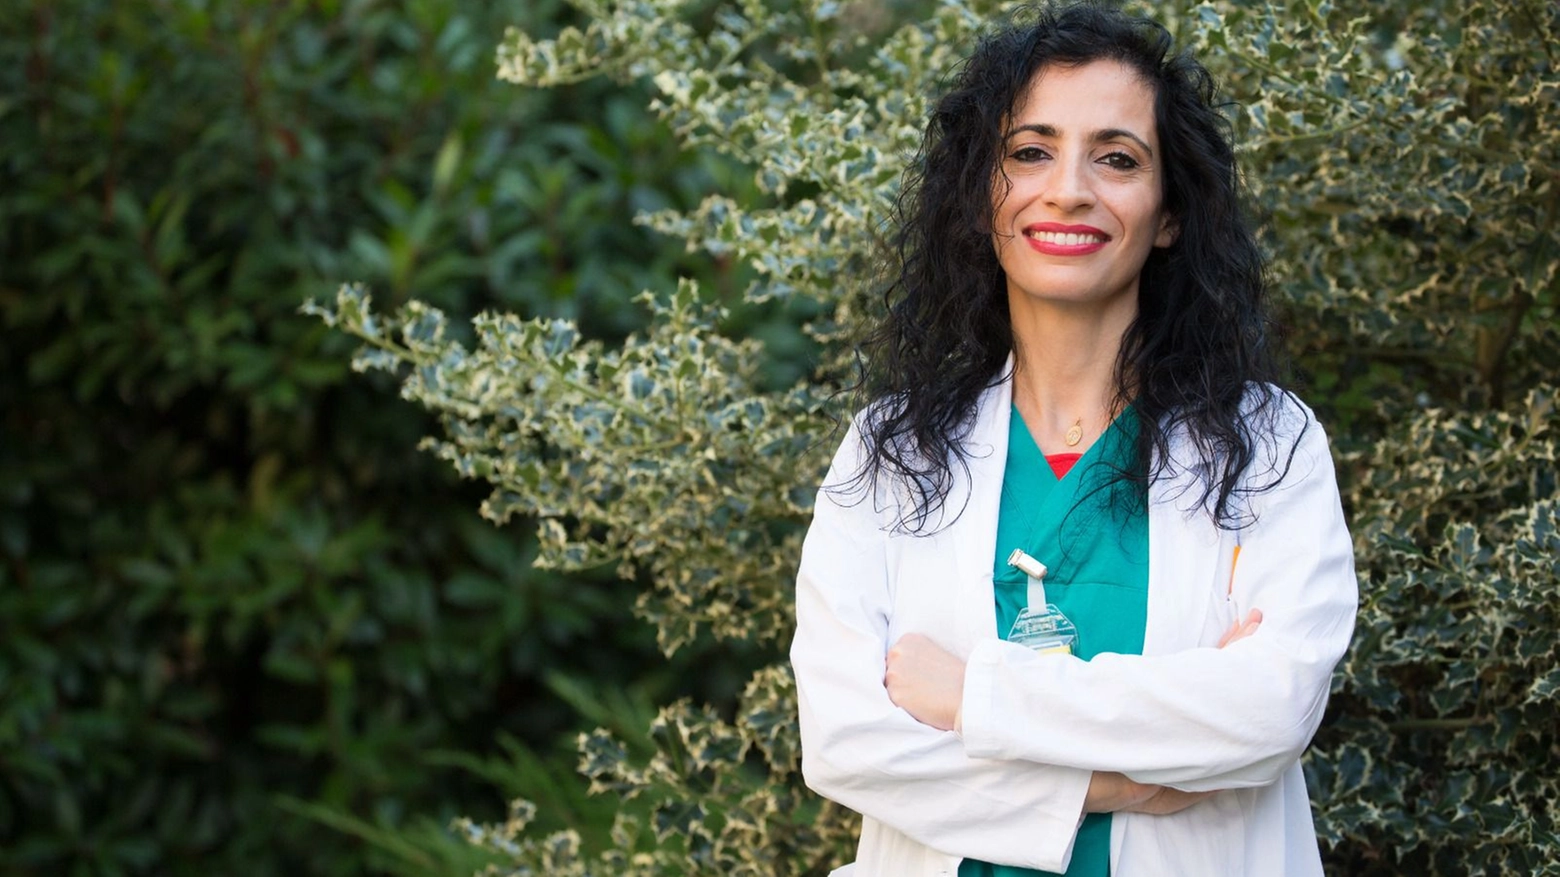 Tiziana Aranzulla, che dirige l’équipe del centro Cardiodonna al Mauriziano di Torino: “Non ci curiamo abbastanza e c’è una sottovalutazione di questi problemi”